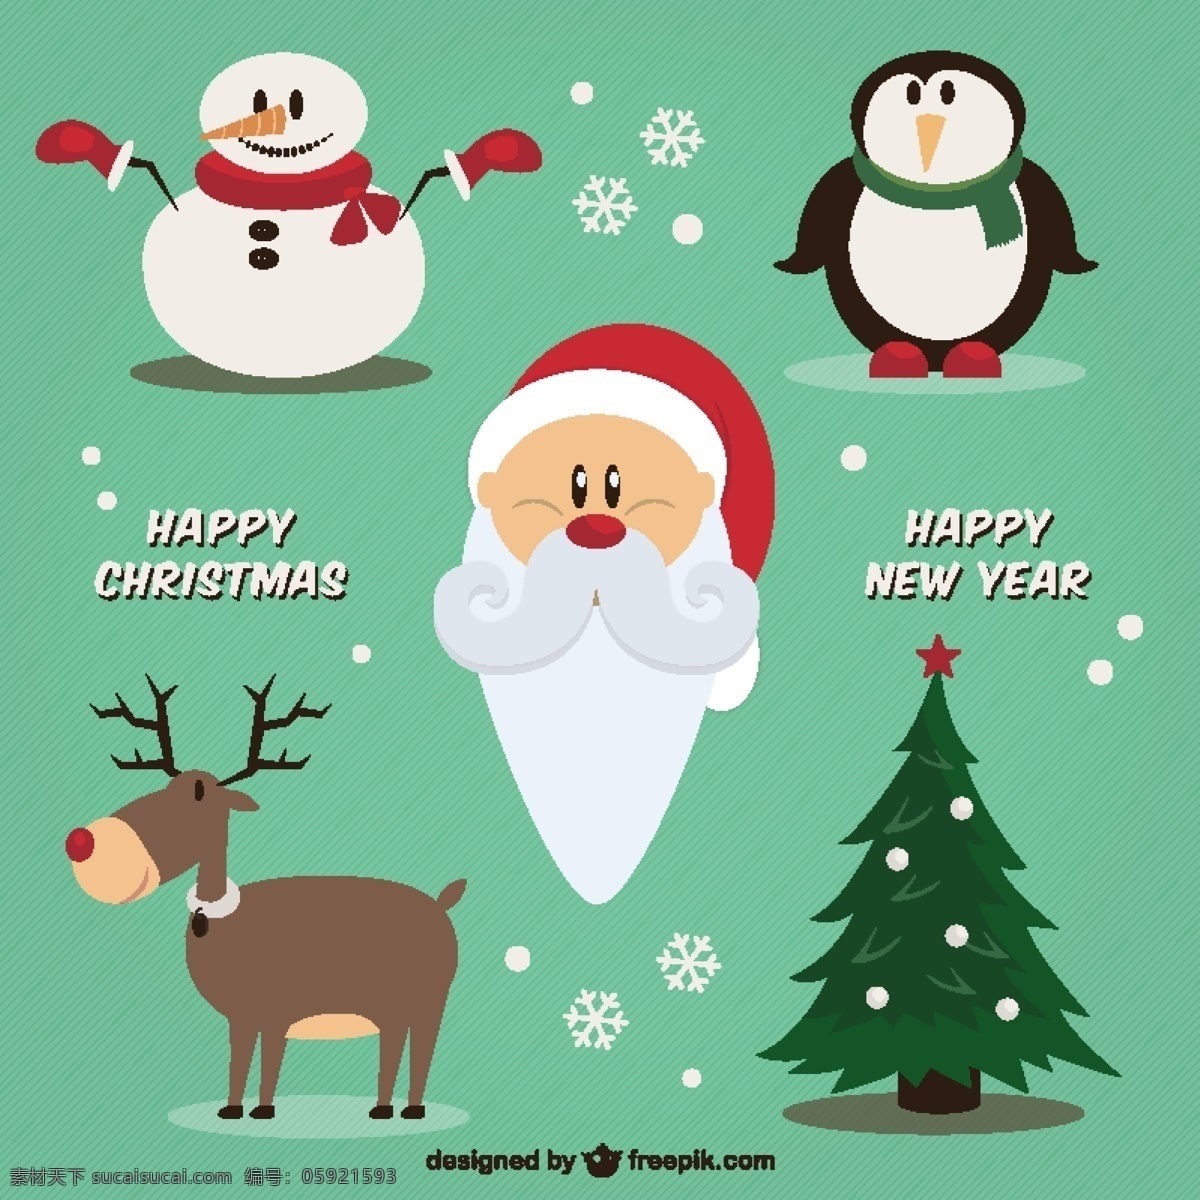 圣诞快乐 新年插图 圣诞树 新的一年 新年快乐 冬天快乐 圣诞克劳斯 圣诞 庆祝活动 新的节日 雪人 驯鹿 企鹅 年 节日快乐 说明 青色 天蓝色